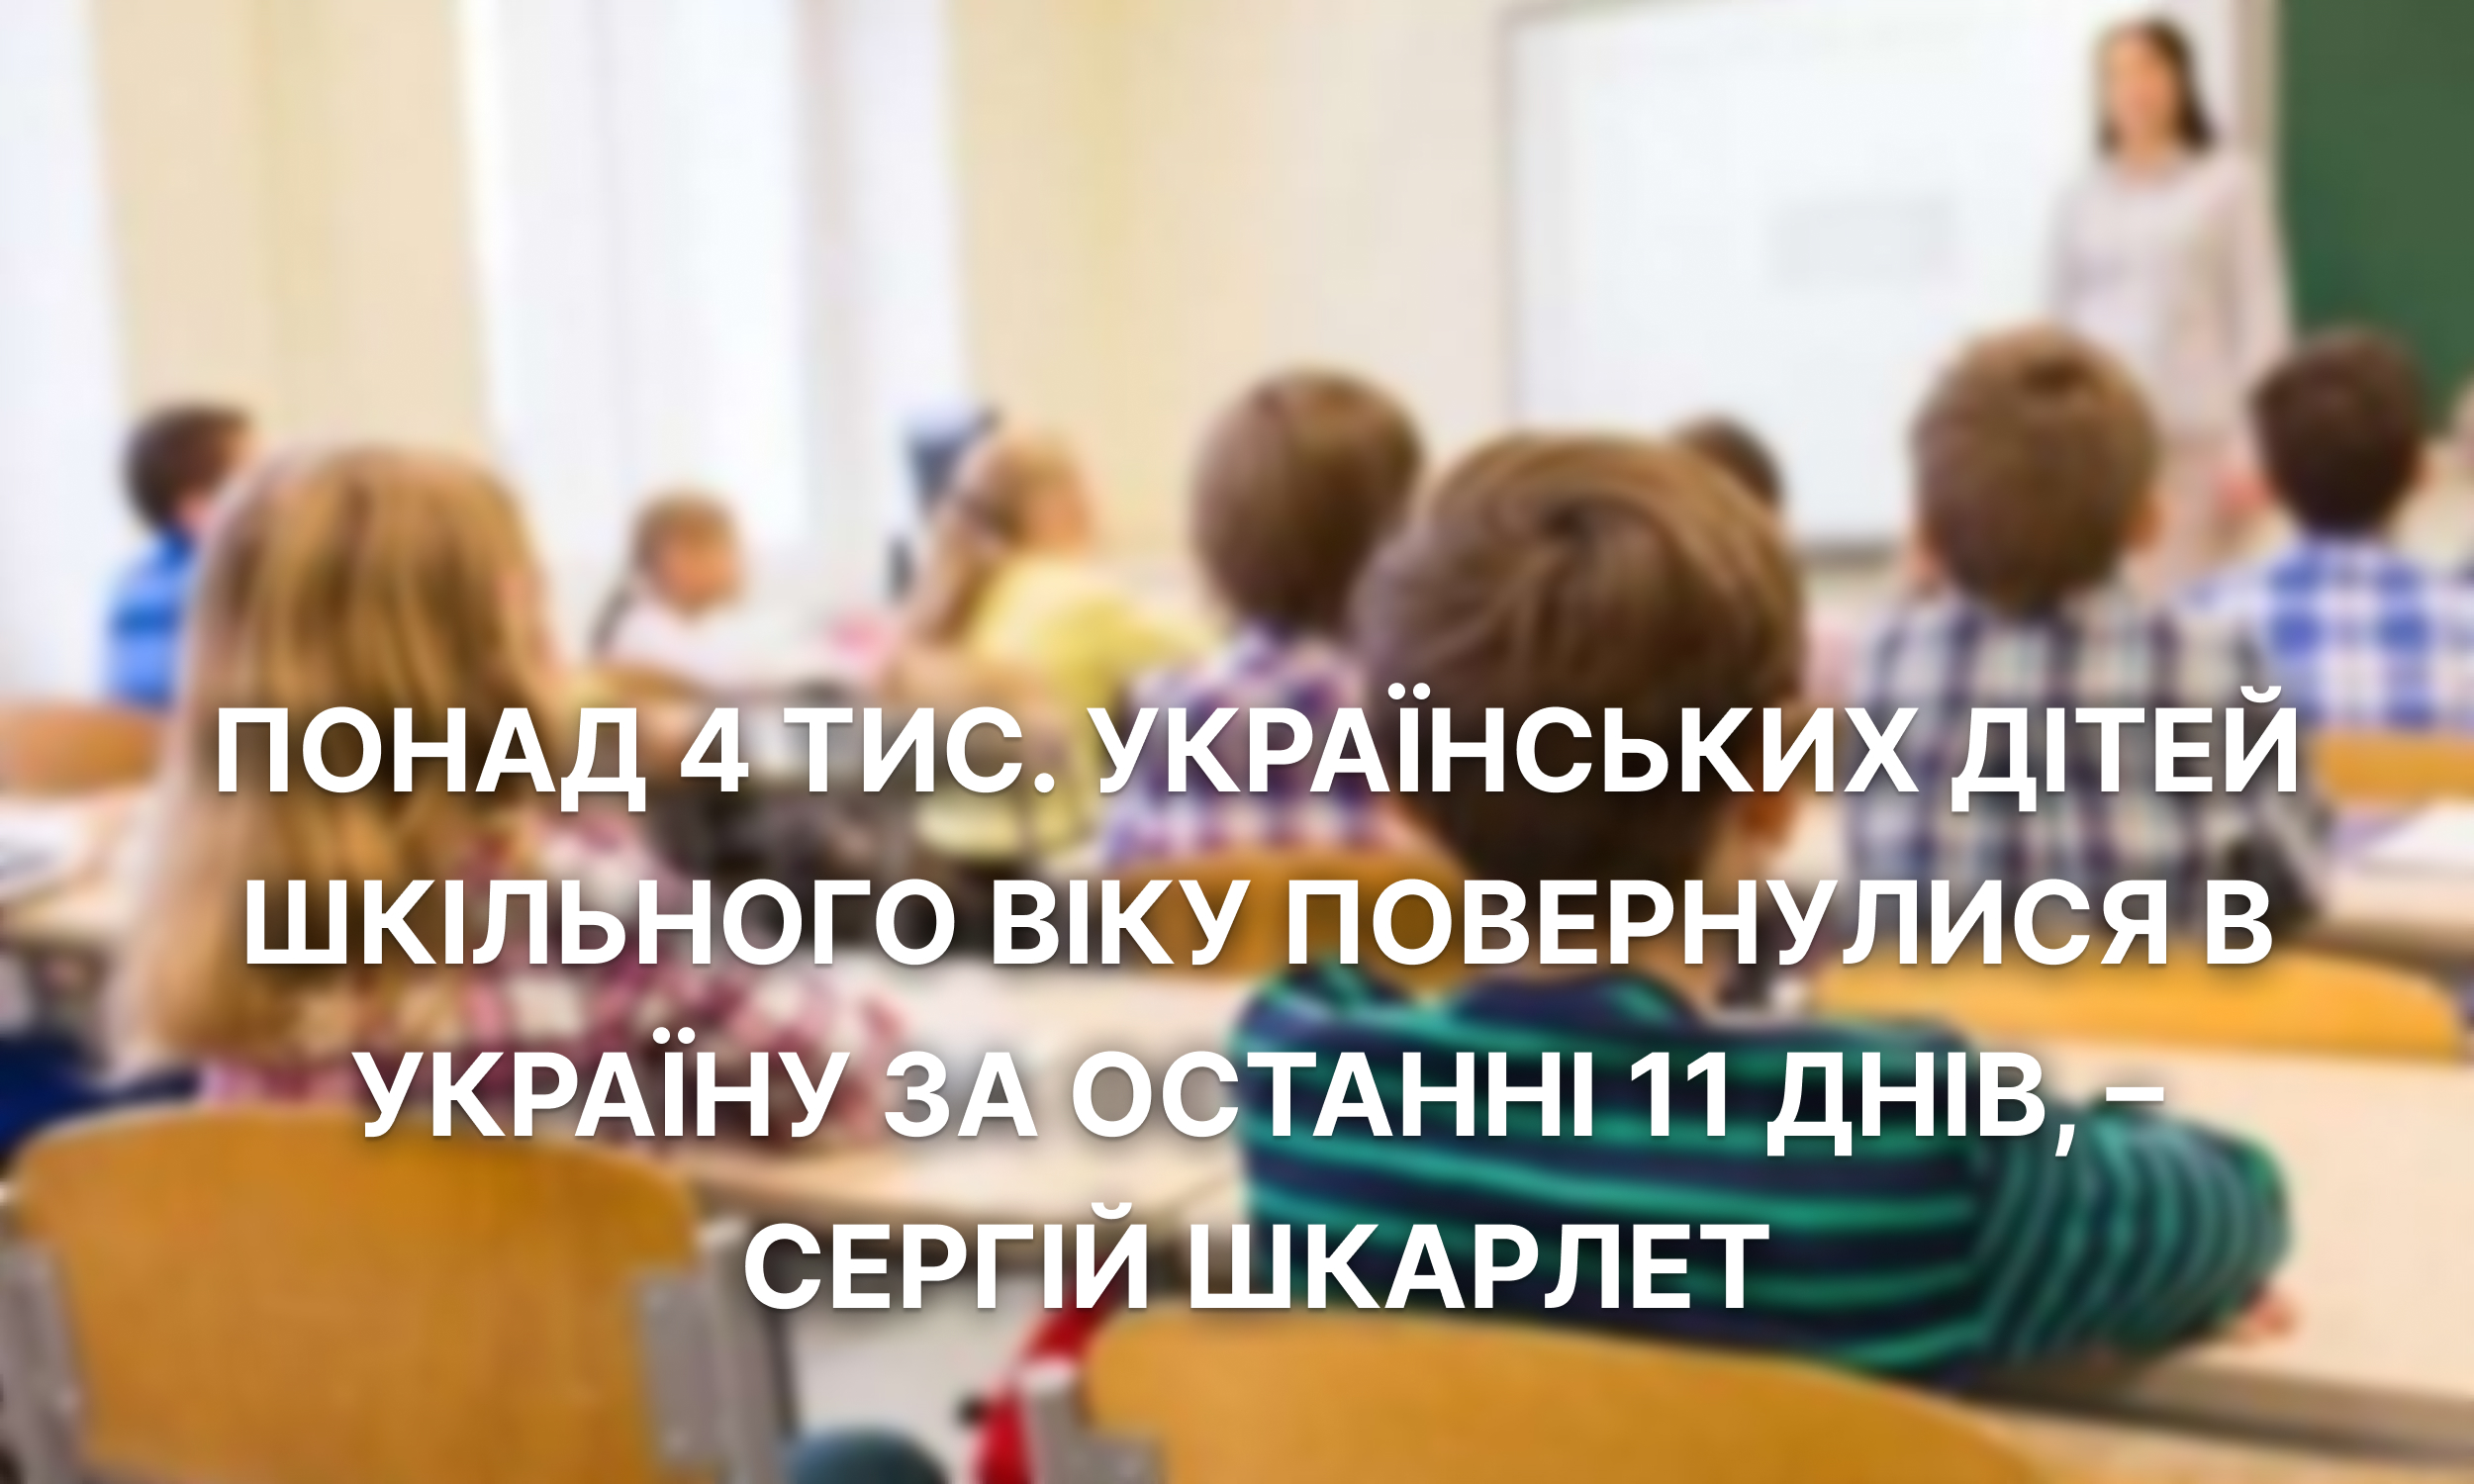 Понад 4 тис. українських дітей шкільного віку повернулися в Україну за останні 11 днів, – Сергій Шкарлет